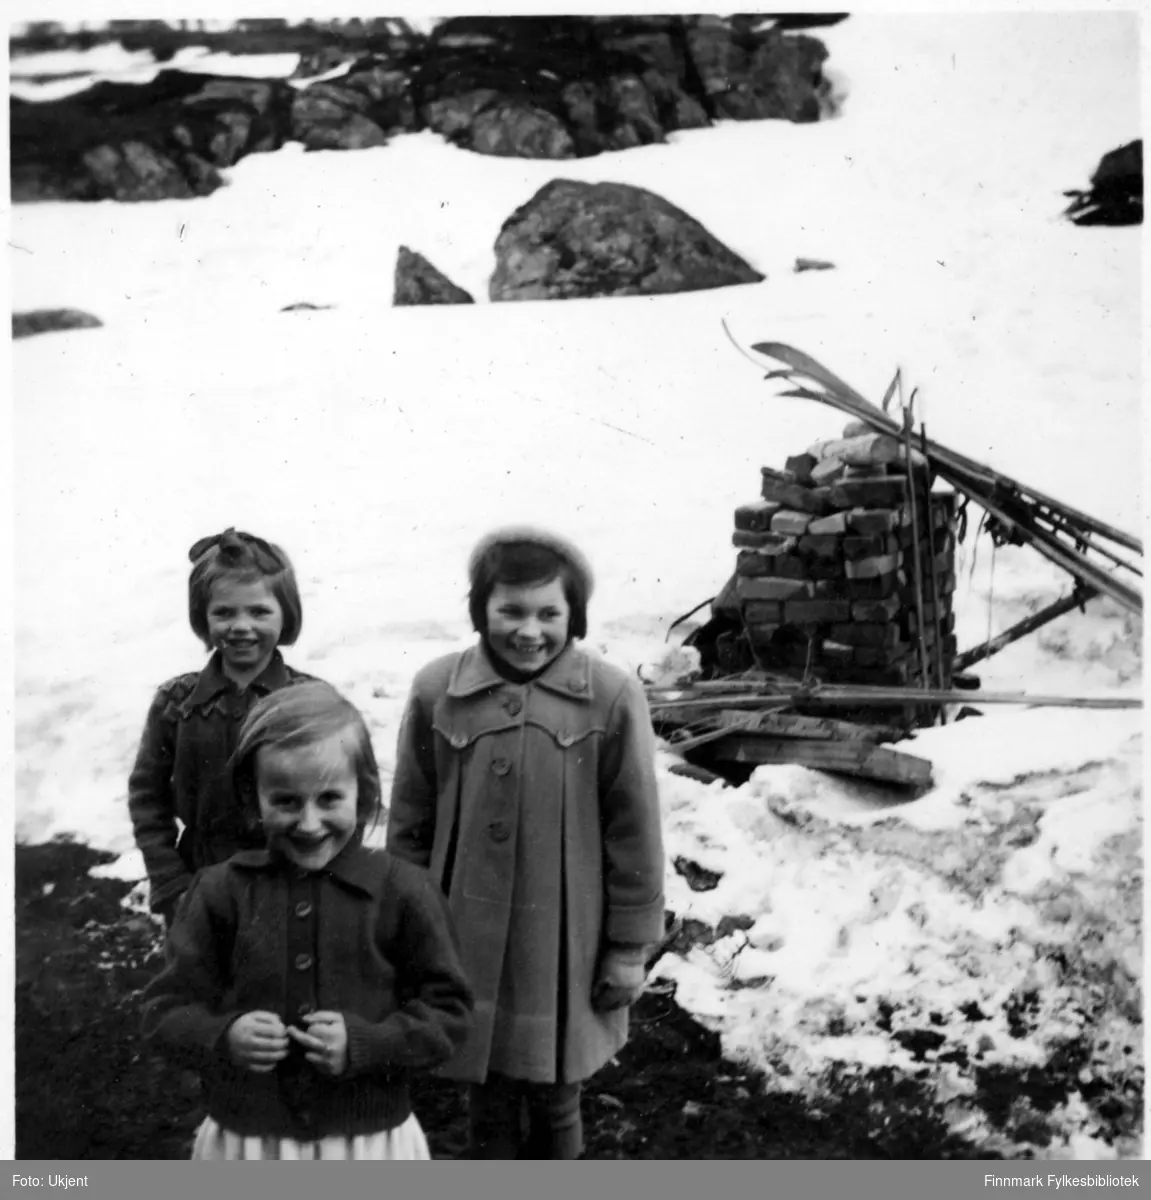 Jerlaug og Karin Andersen står bak Randi Martinsen (framst) og smiler til kameraet. Alle barna er fra Nuvsvåg. Jerlaug og Karin er kledd i jakker. Jerlaug har en sløyfe i håret, Karin en lue på hodet. Randi har på seg en genser. I bakgrunnen kan man se ski som er stablet opp, steiner og mye snø. Bildet er mulignes tatt i 1952.